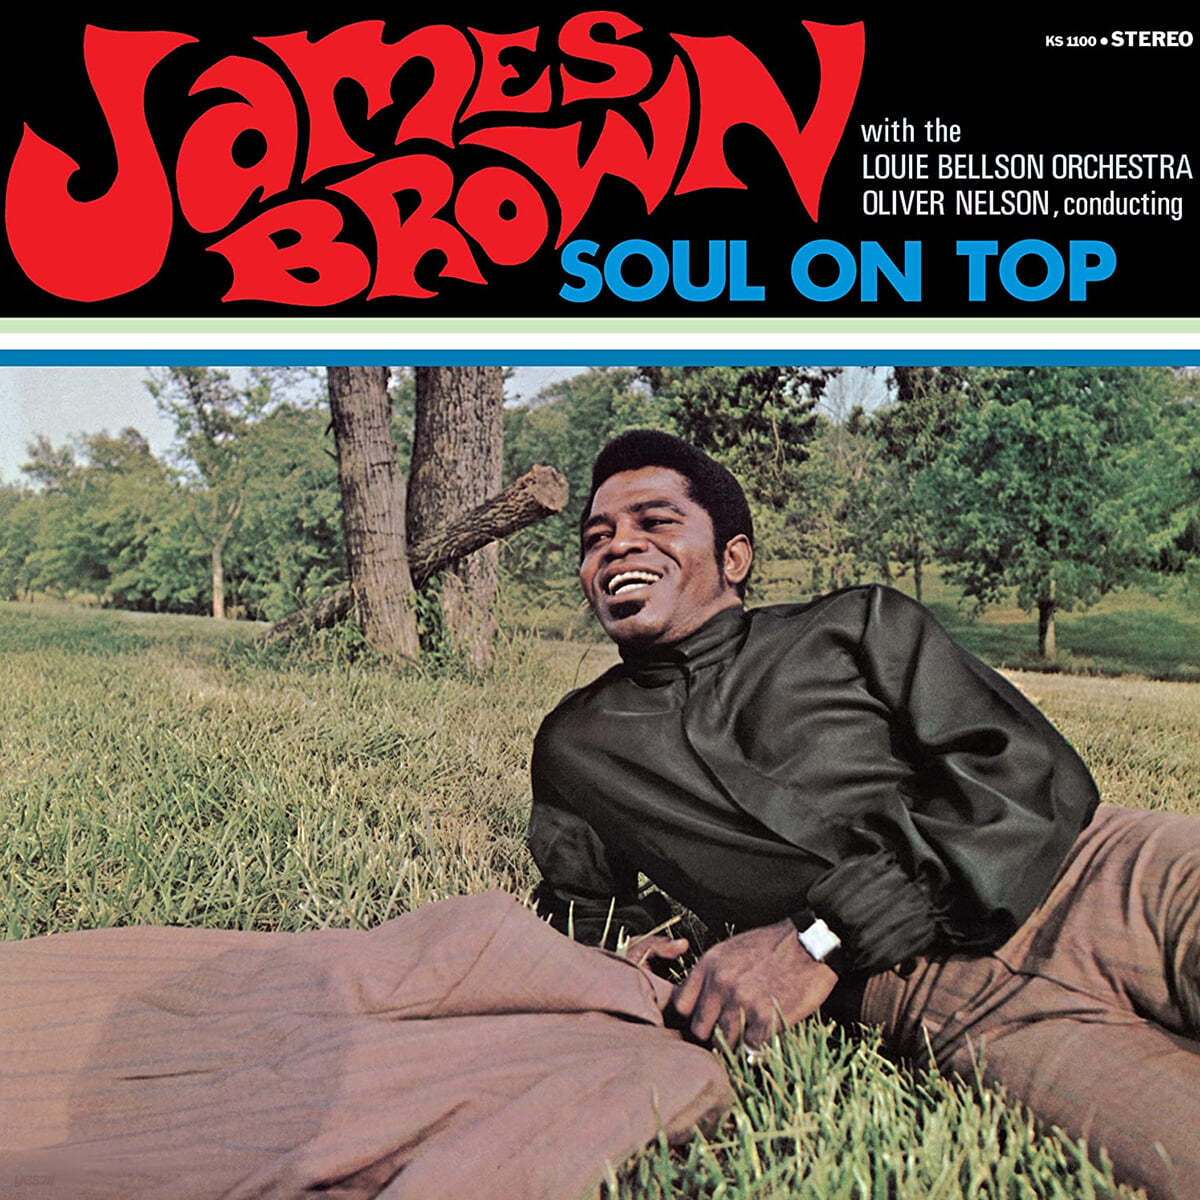 James Brown (제임스 브라운) - Soul On Top [LP]